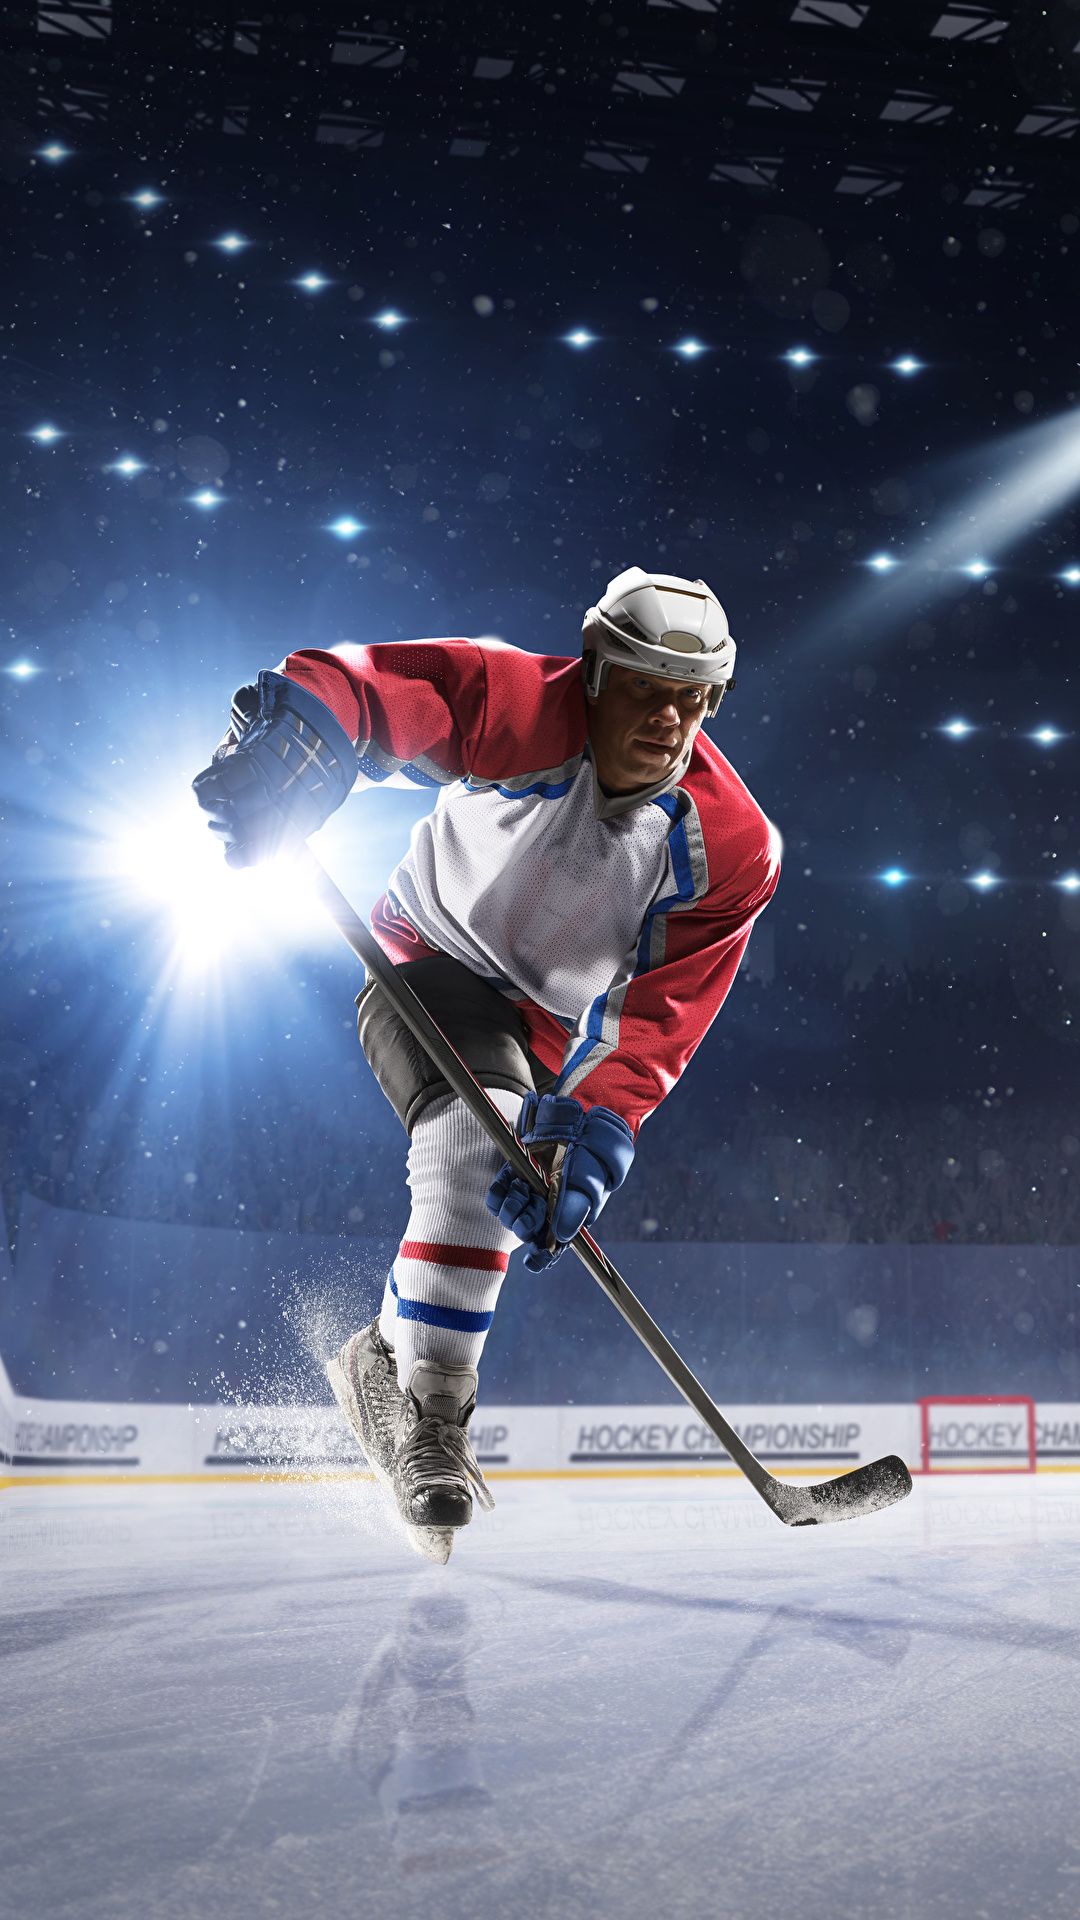  Eishockey Hintergrundbild 1080x1920. Fotos von Lichtstrahl Mann Helm Eisbahn Eis Sport Hockey 1080x1920